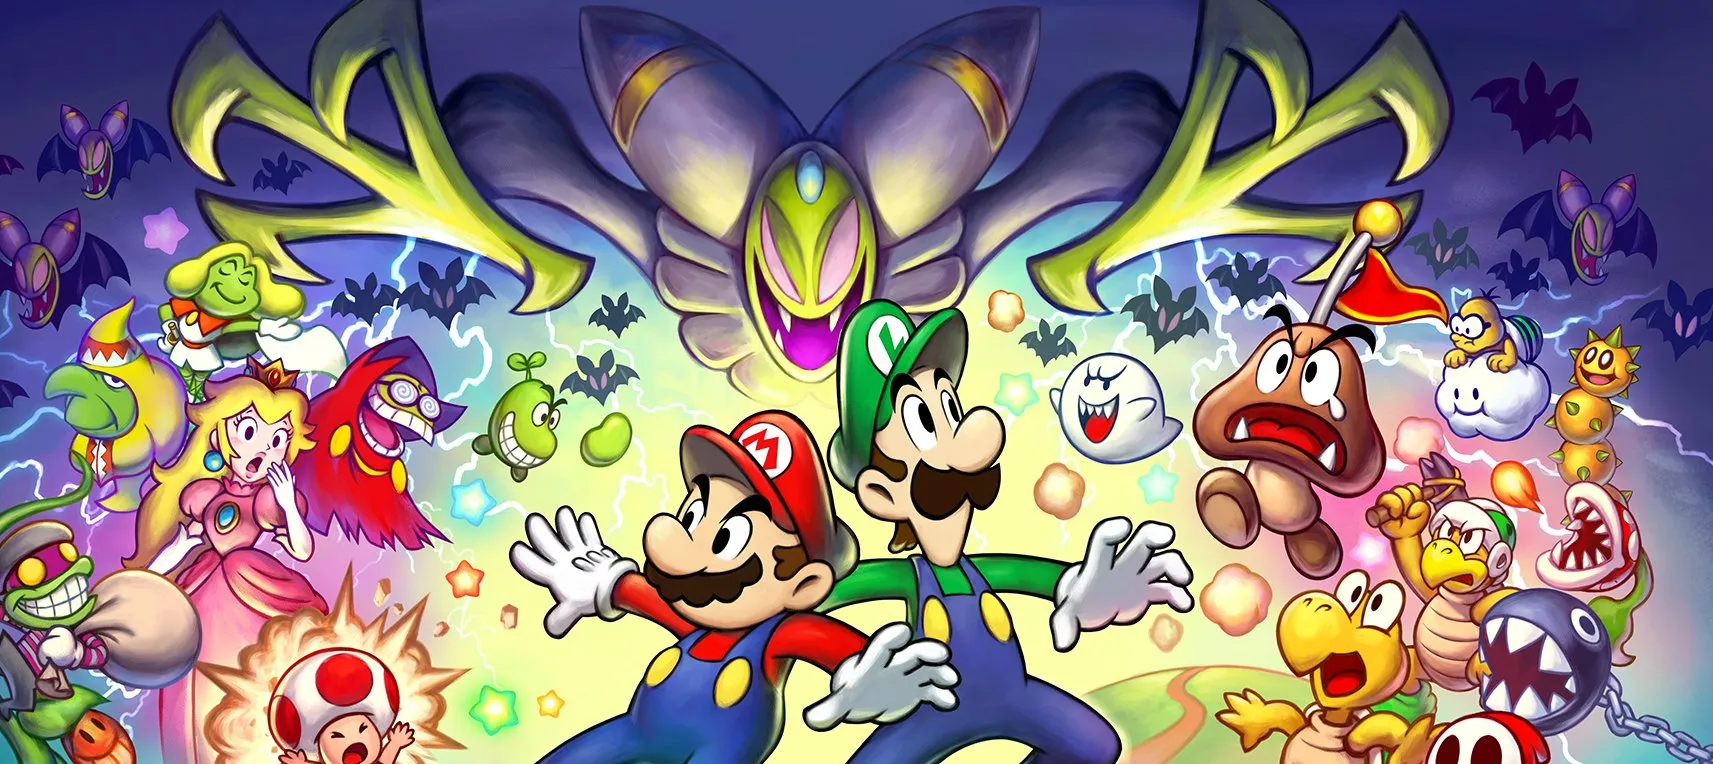 Mario & Luigi: Superstar Saga + Bowser's Minions review - Polygon